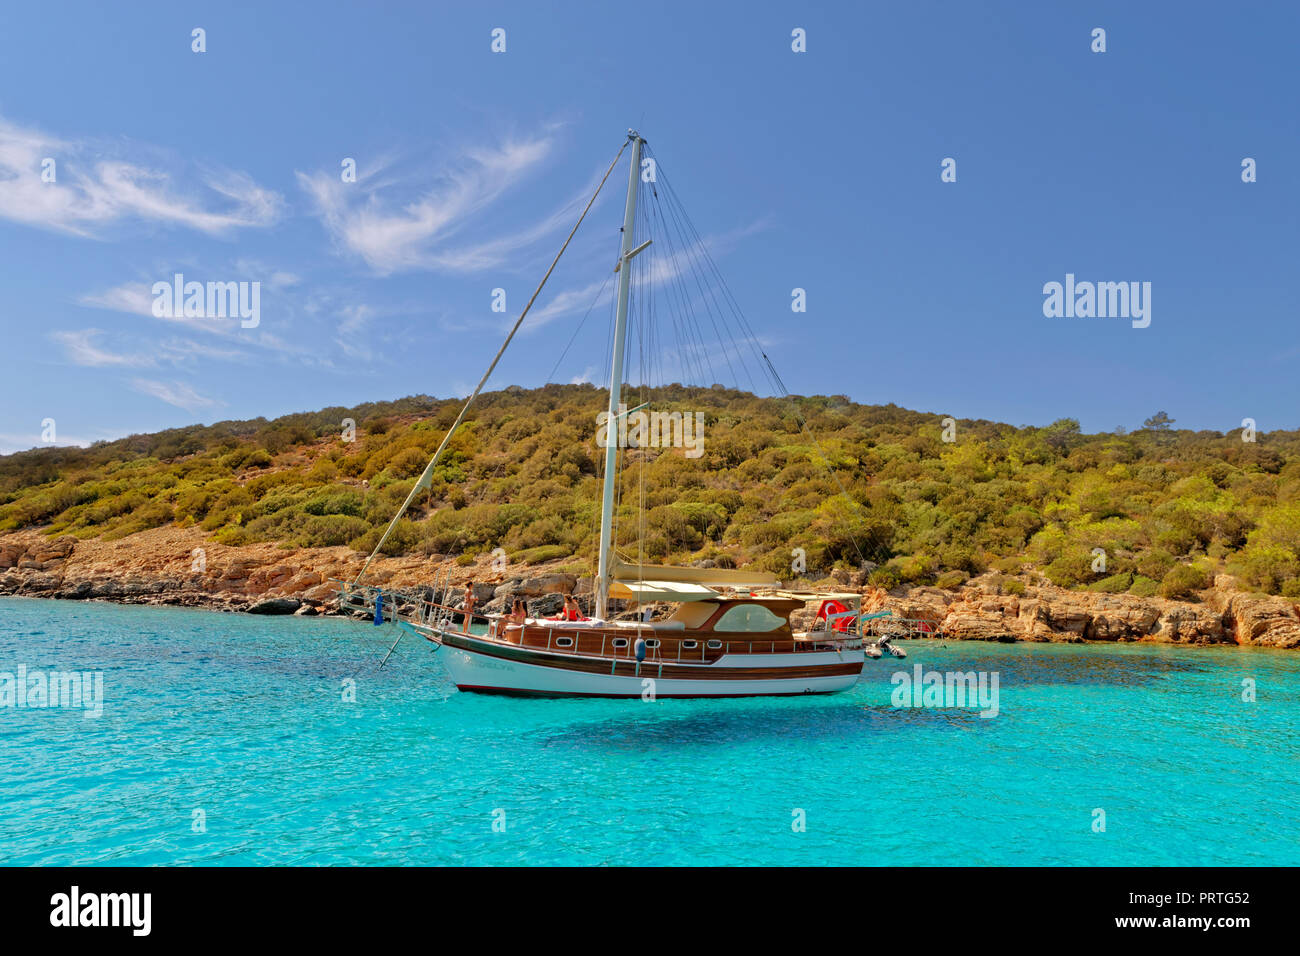 Caicco barca ormeggiata a Poyraz bay sull'isola Karaada (Isola nera) Vicino Bodrum nella Provincia di Mugla, Turchia. Foto Stock